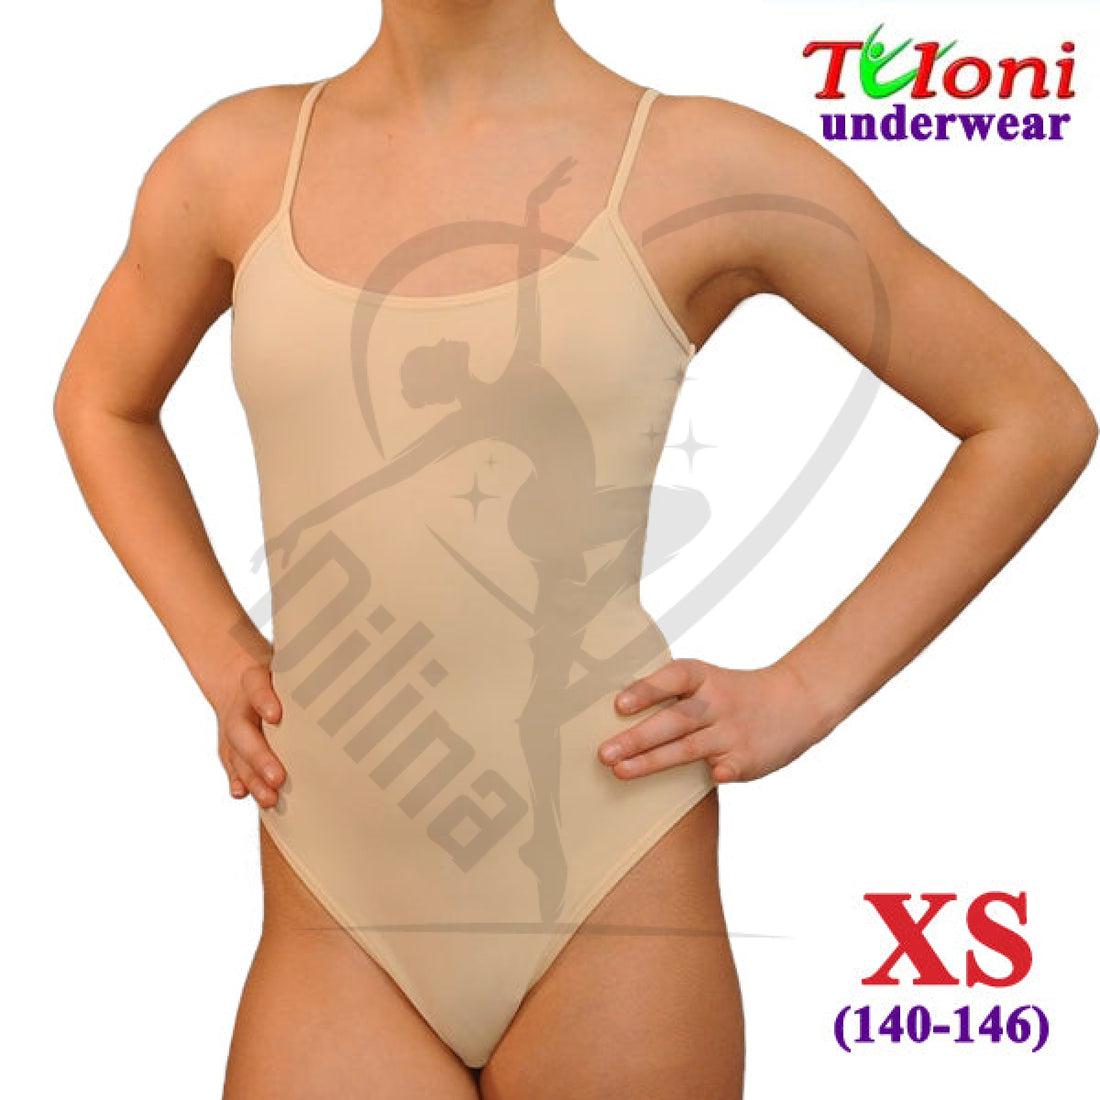 Tuloni Under Leotard Xs (140-146) Underwear